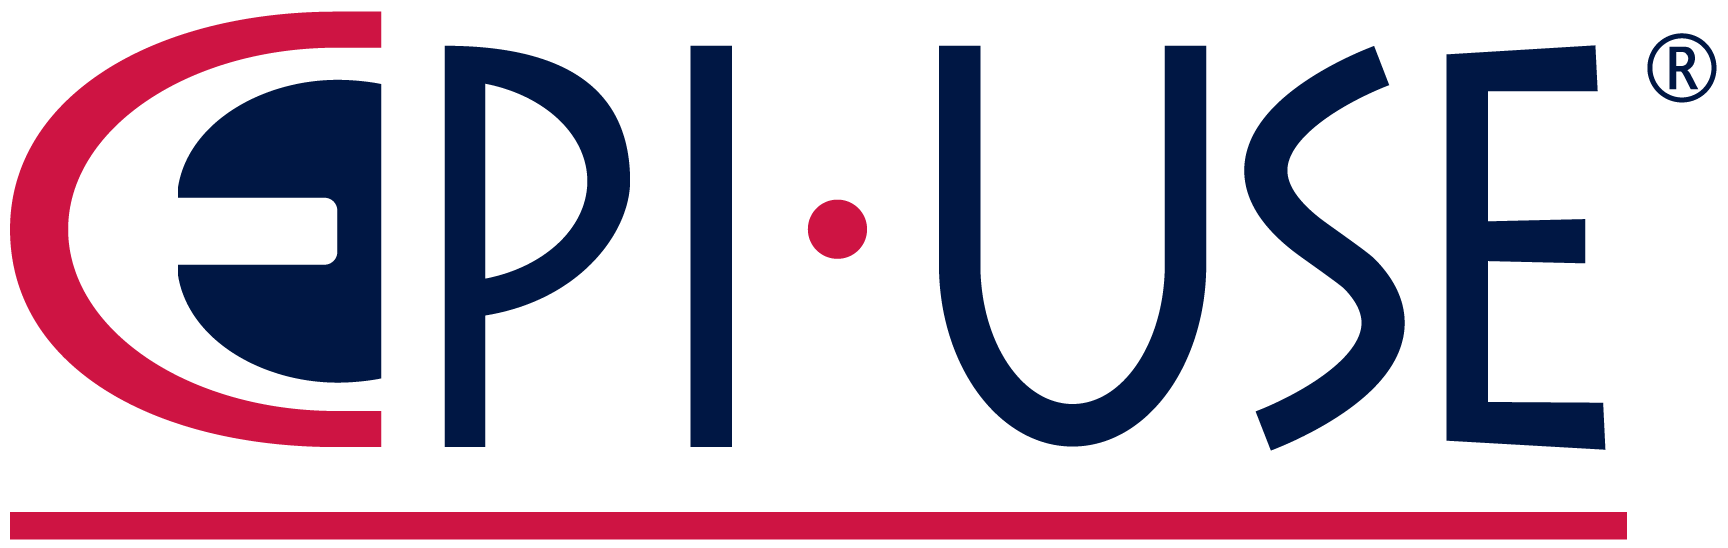 Epi Logo - EPI USE